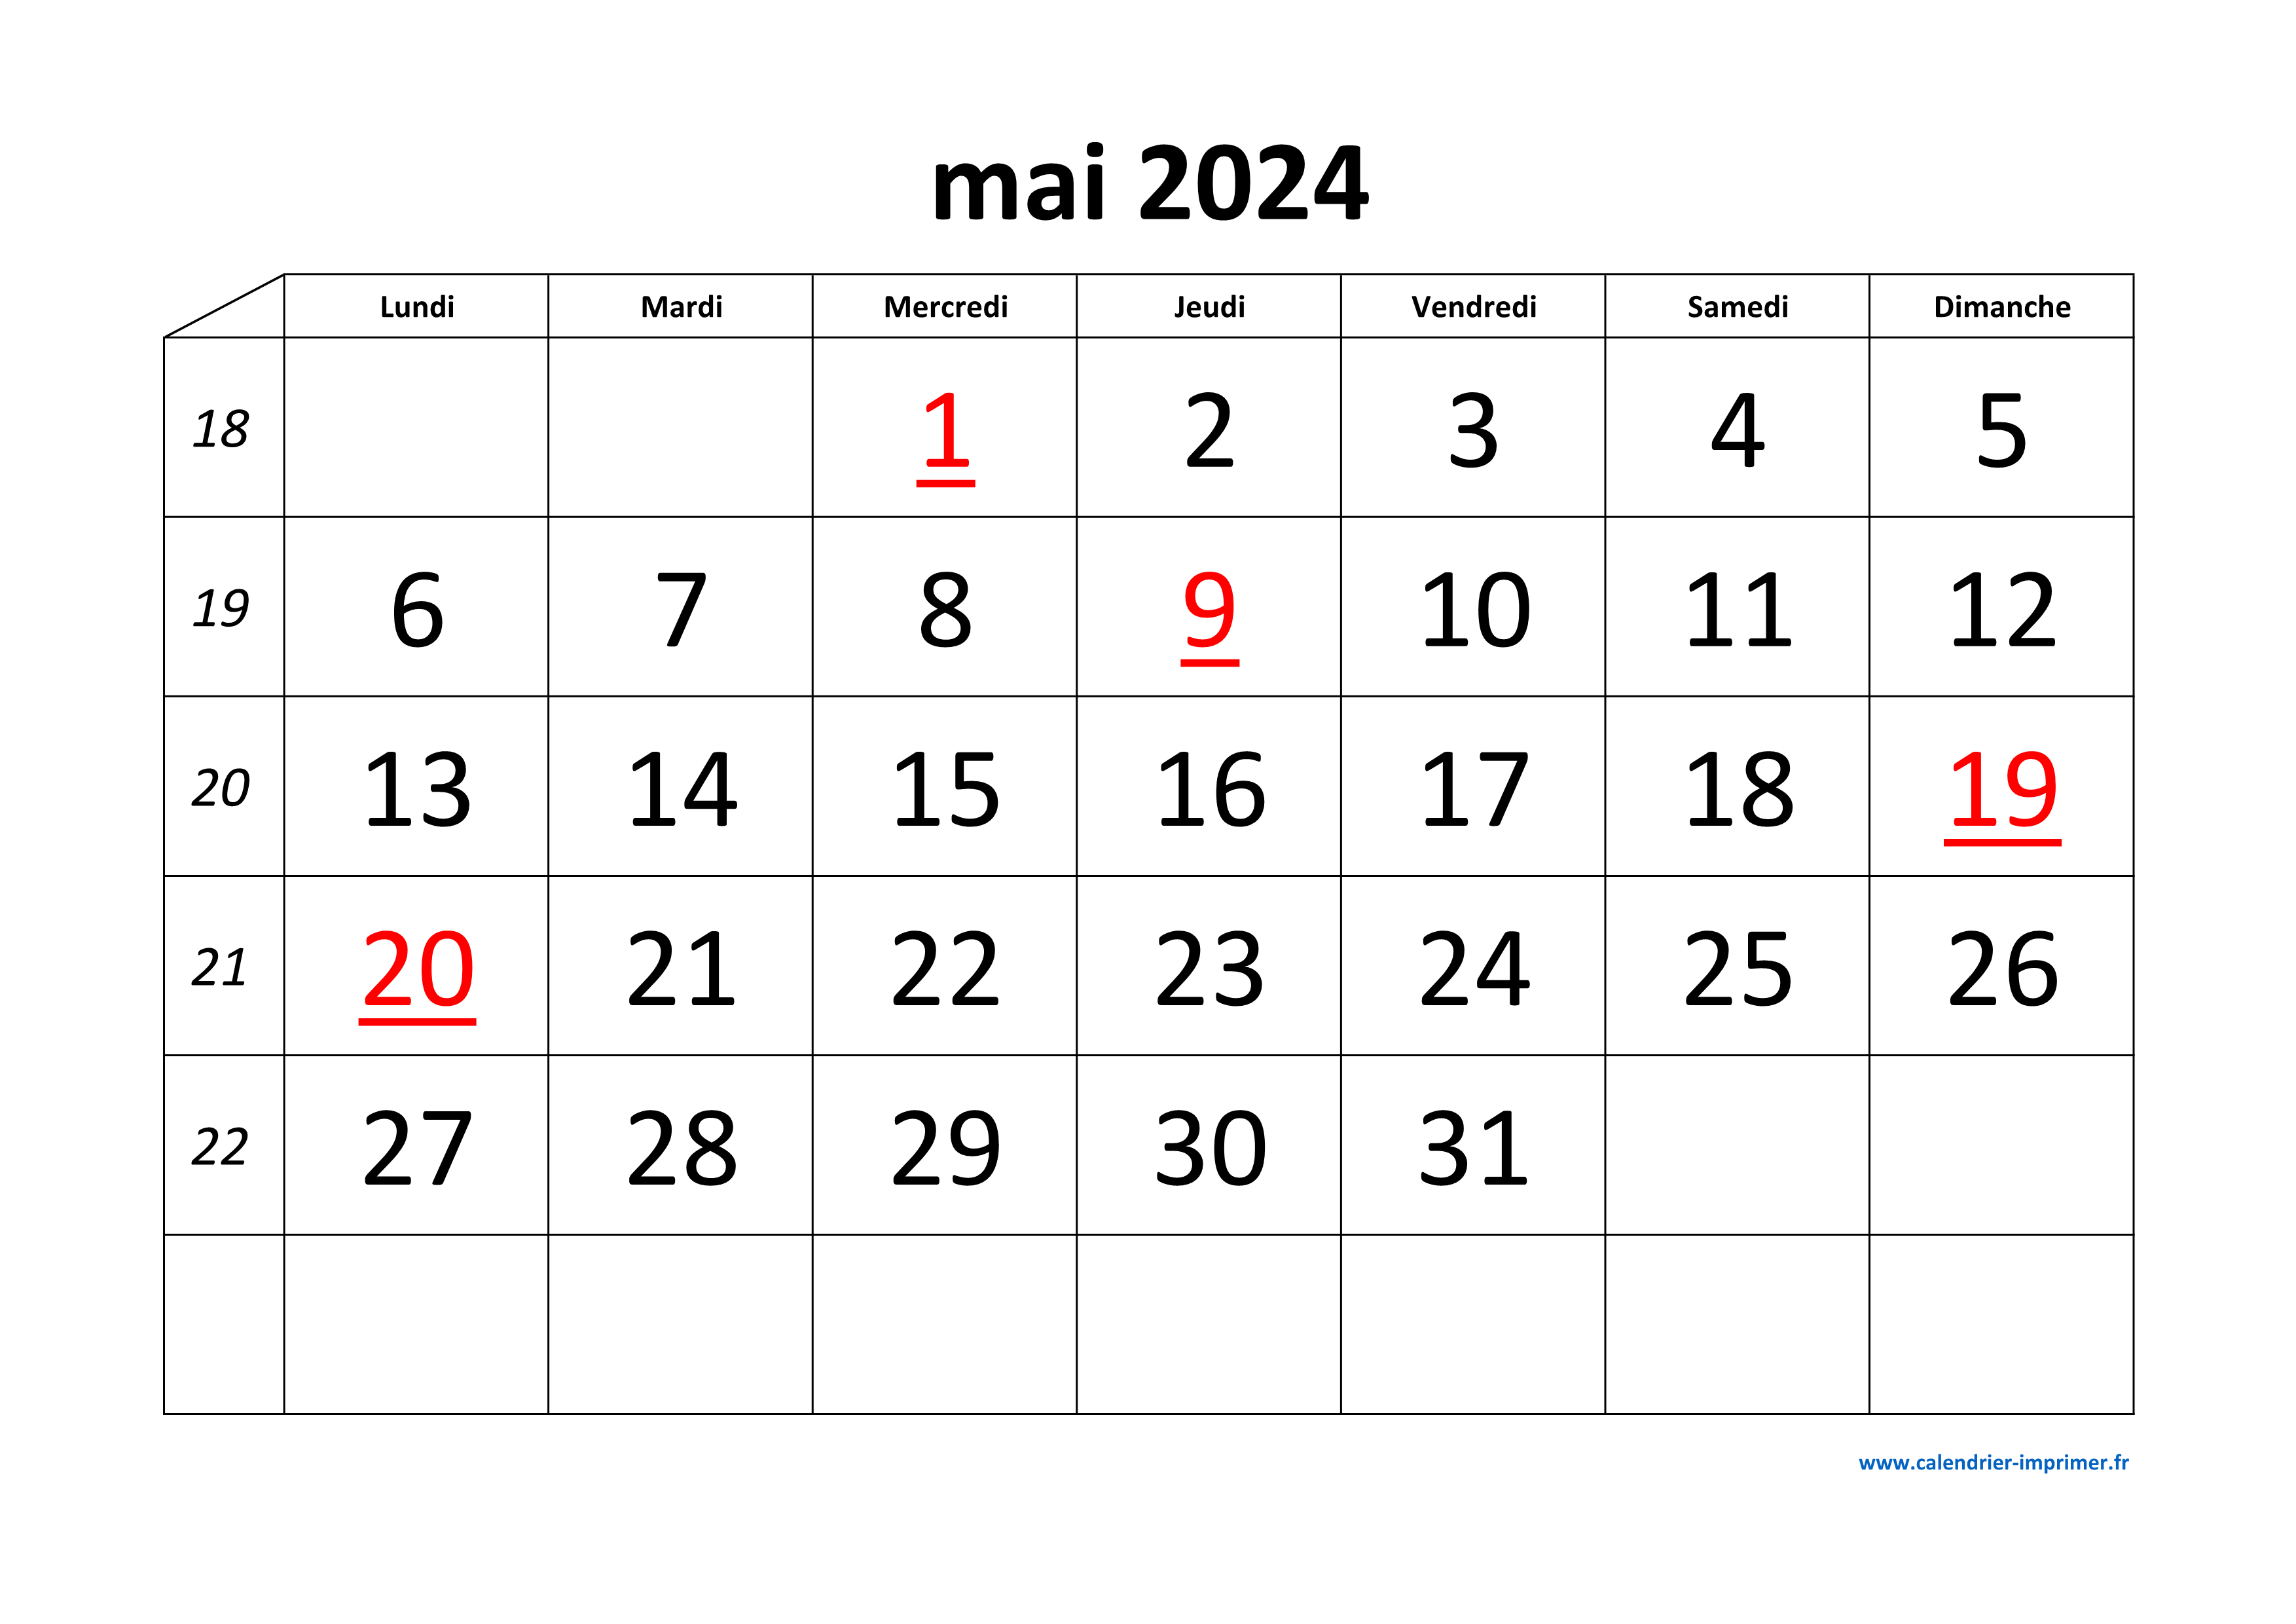 Calendrier Mai 2024 à consulter ou imprimer 